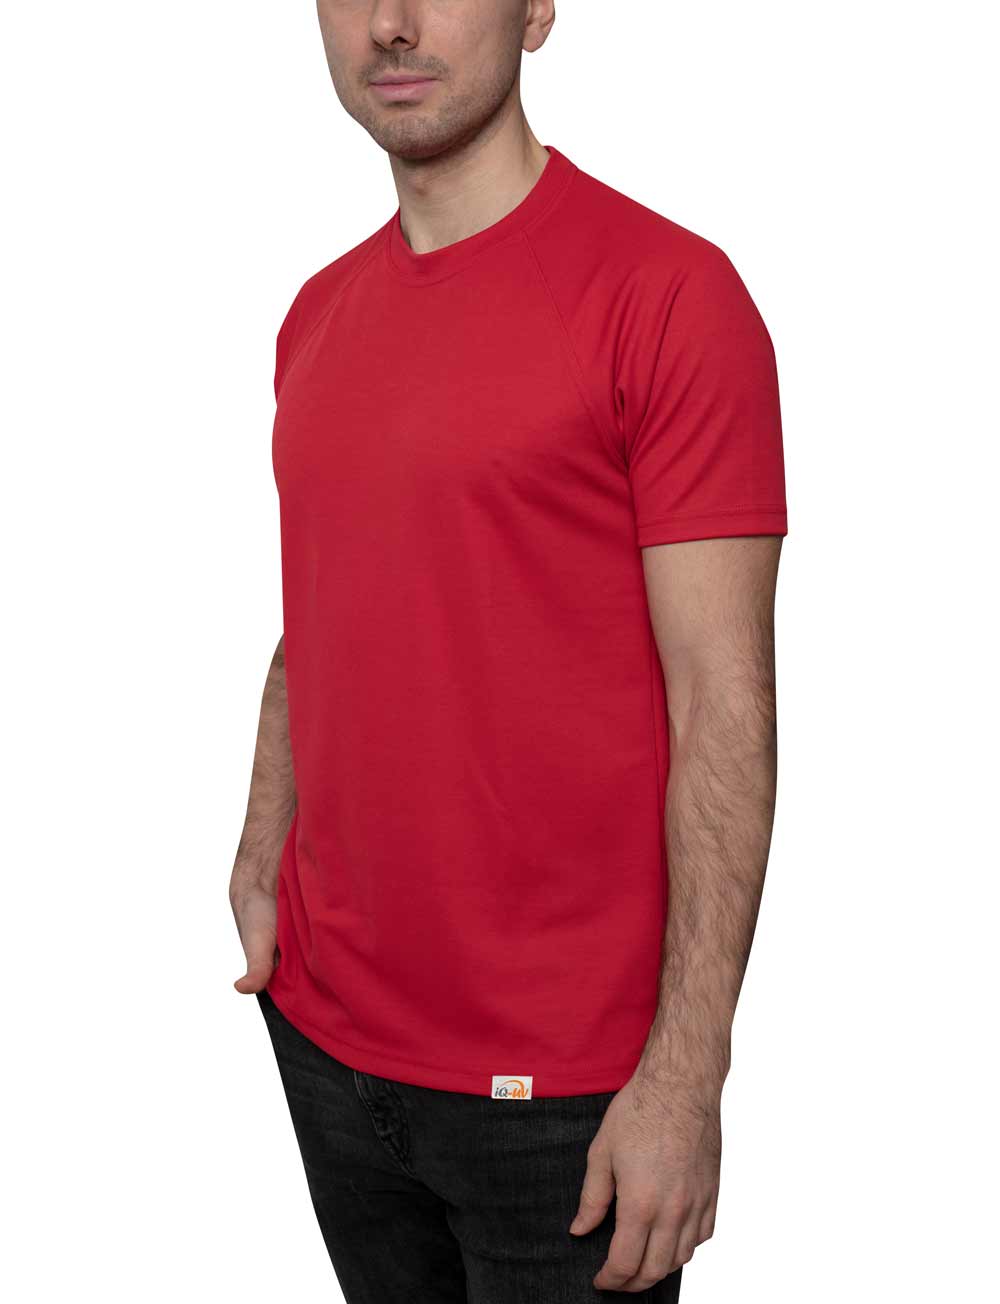 UV T-Shirt für Herren Outdoor Rundhals rot angezogen